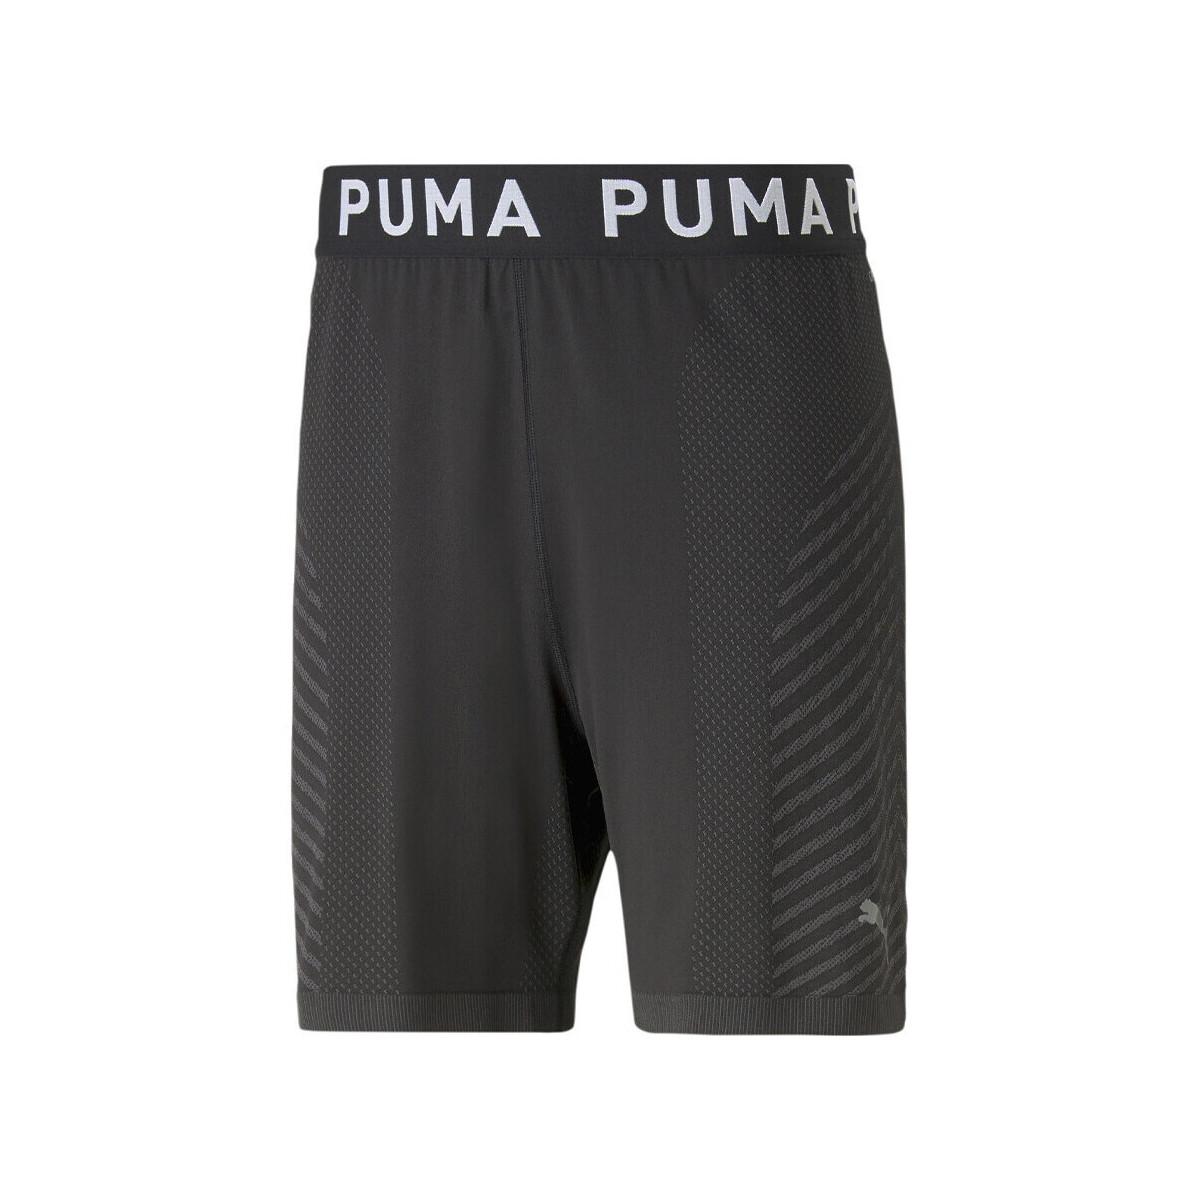 Vêtements Homme Shorts / Bermudas Puma 523509-01 Gris